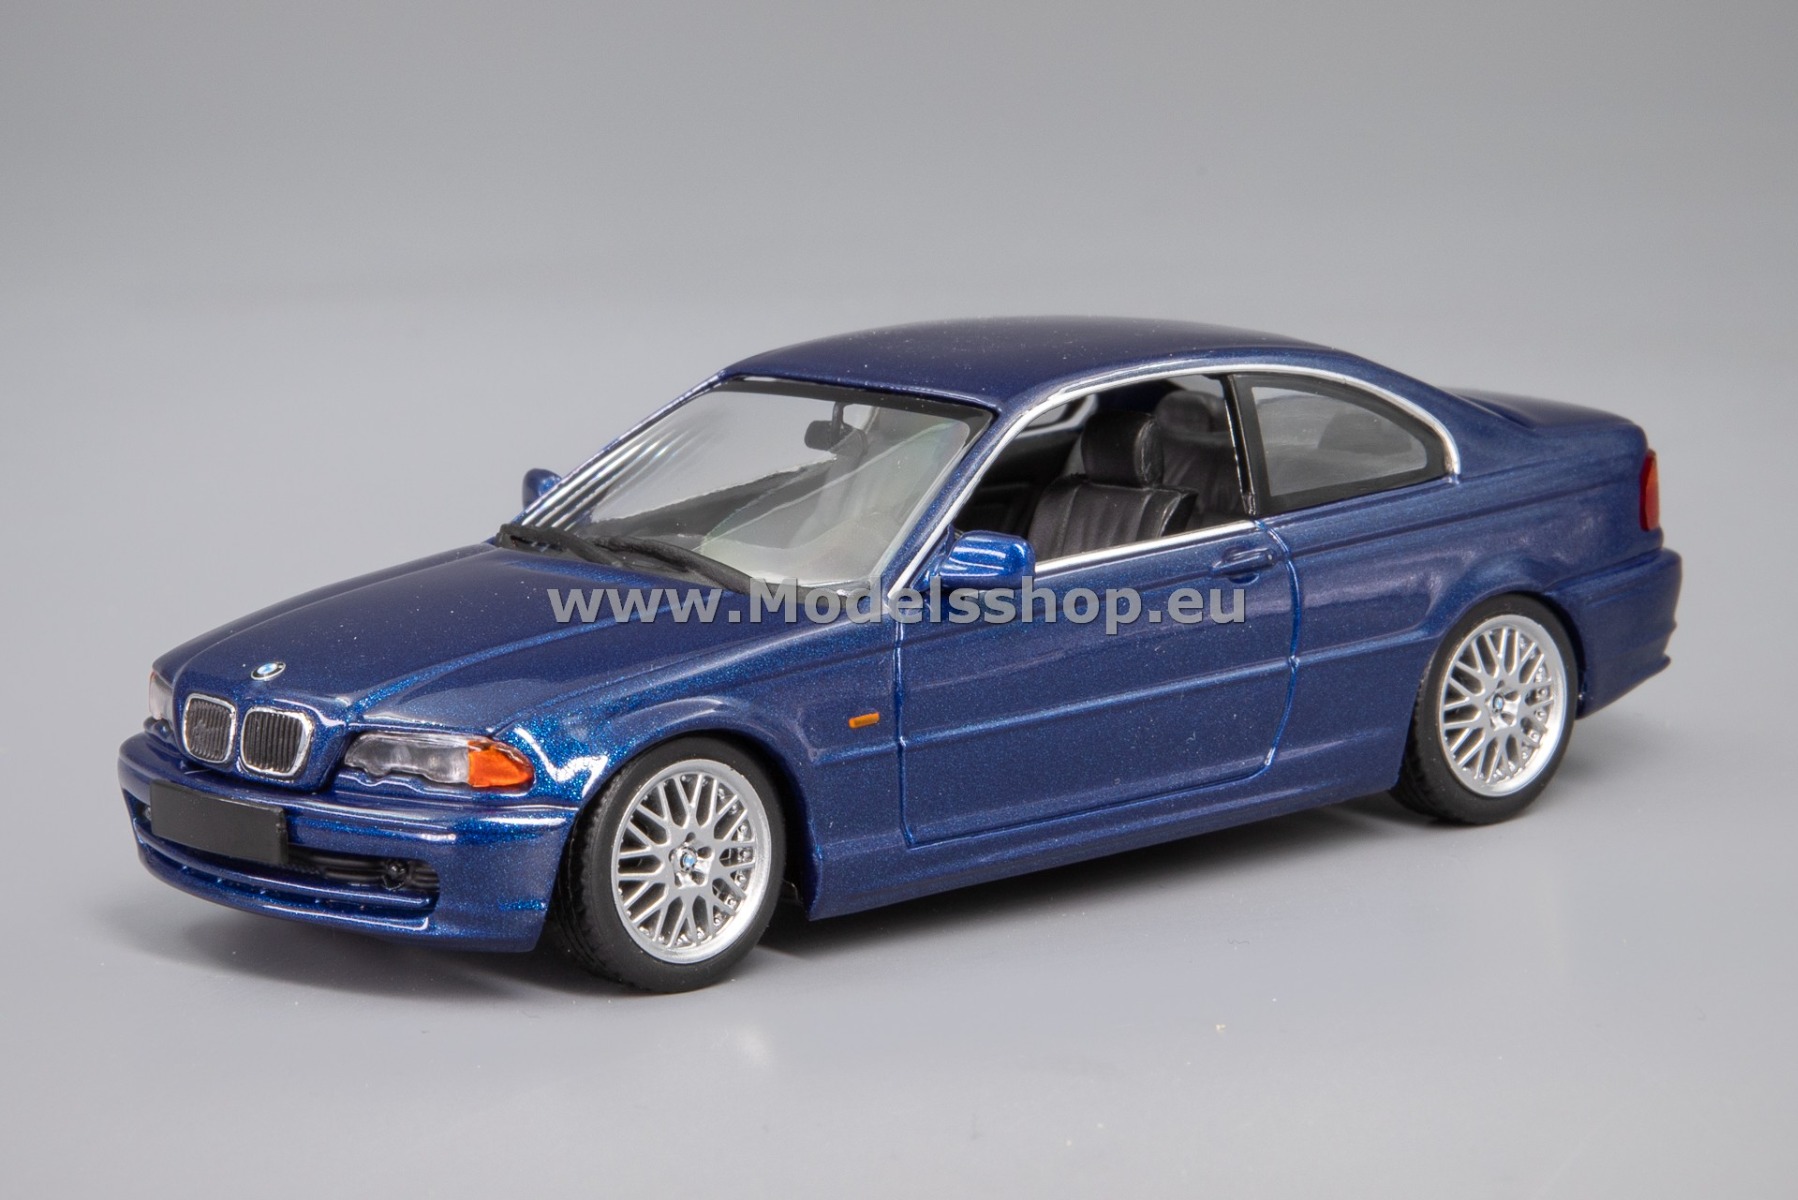 Maxichamps 940028321 BMW 328 Ci Coupe (E46), 1999 /blue metallic/